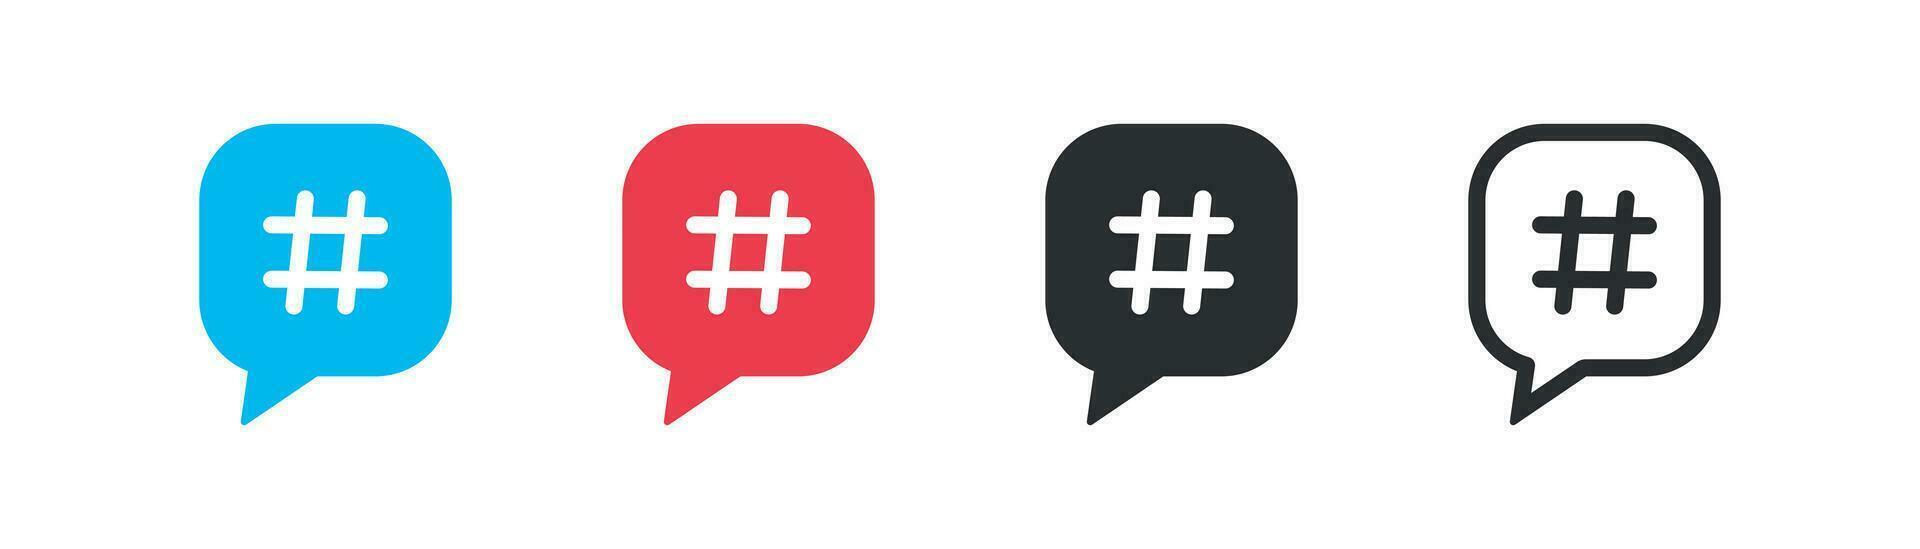 hashtag ikon uppsättning. social media begrepp illustration symbol. tecken bloggande vektor